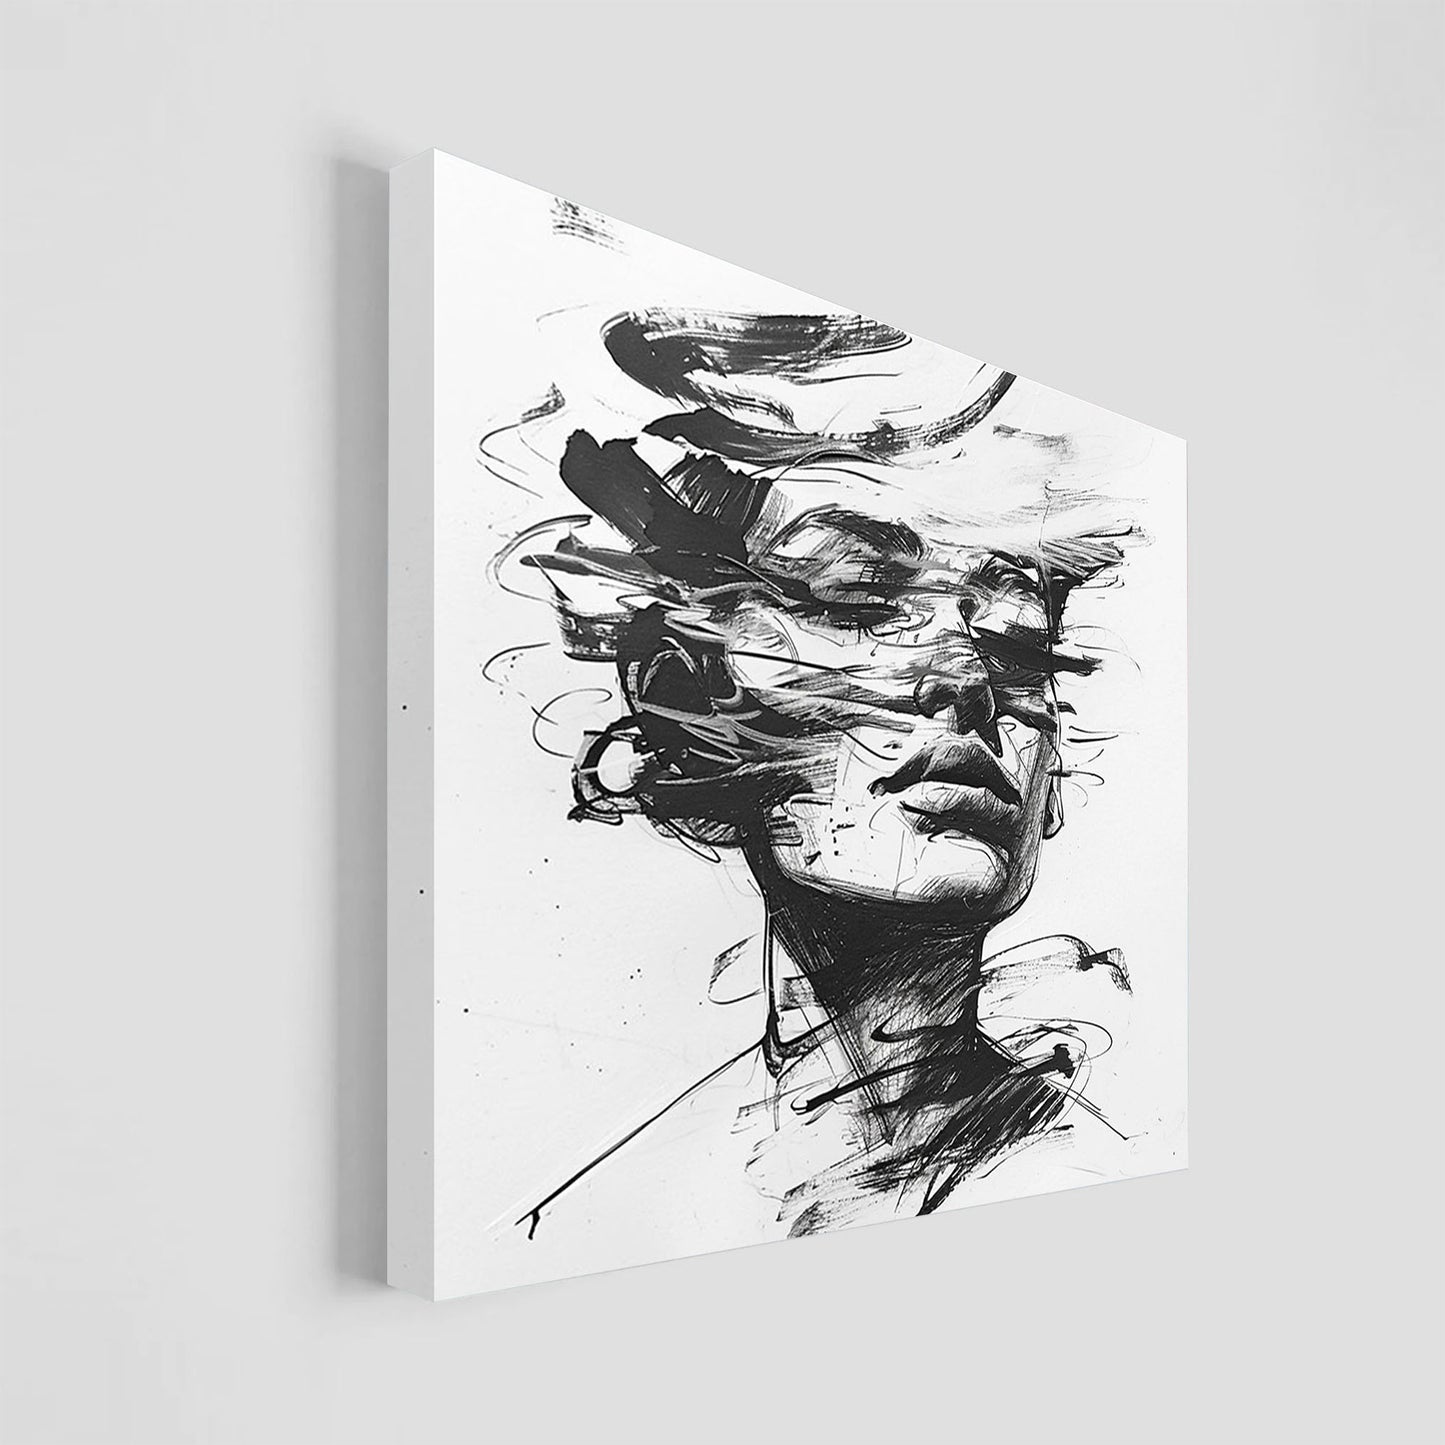 Ilustración en blanco y negro de un rostro humano rodeado por líneas dinámicas y abstractas, creando una sensación de movimiento.